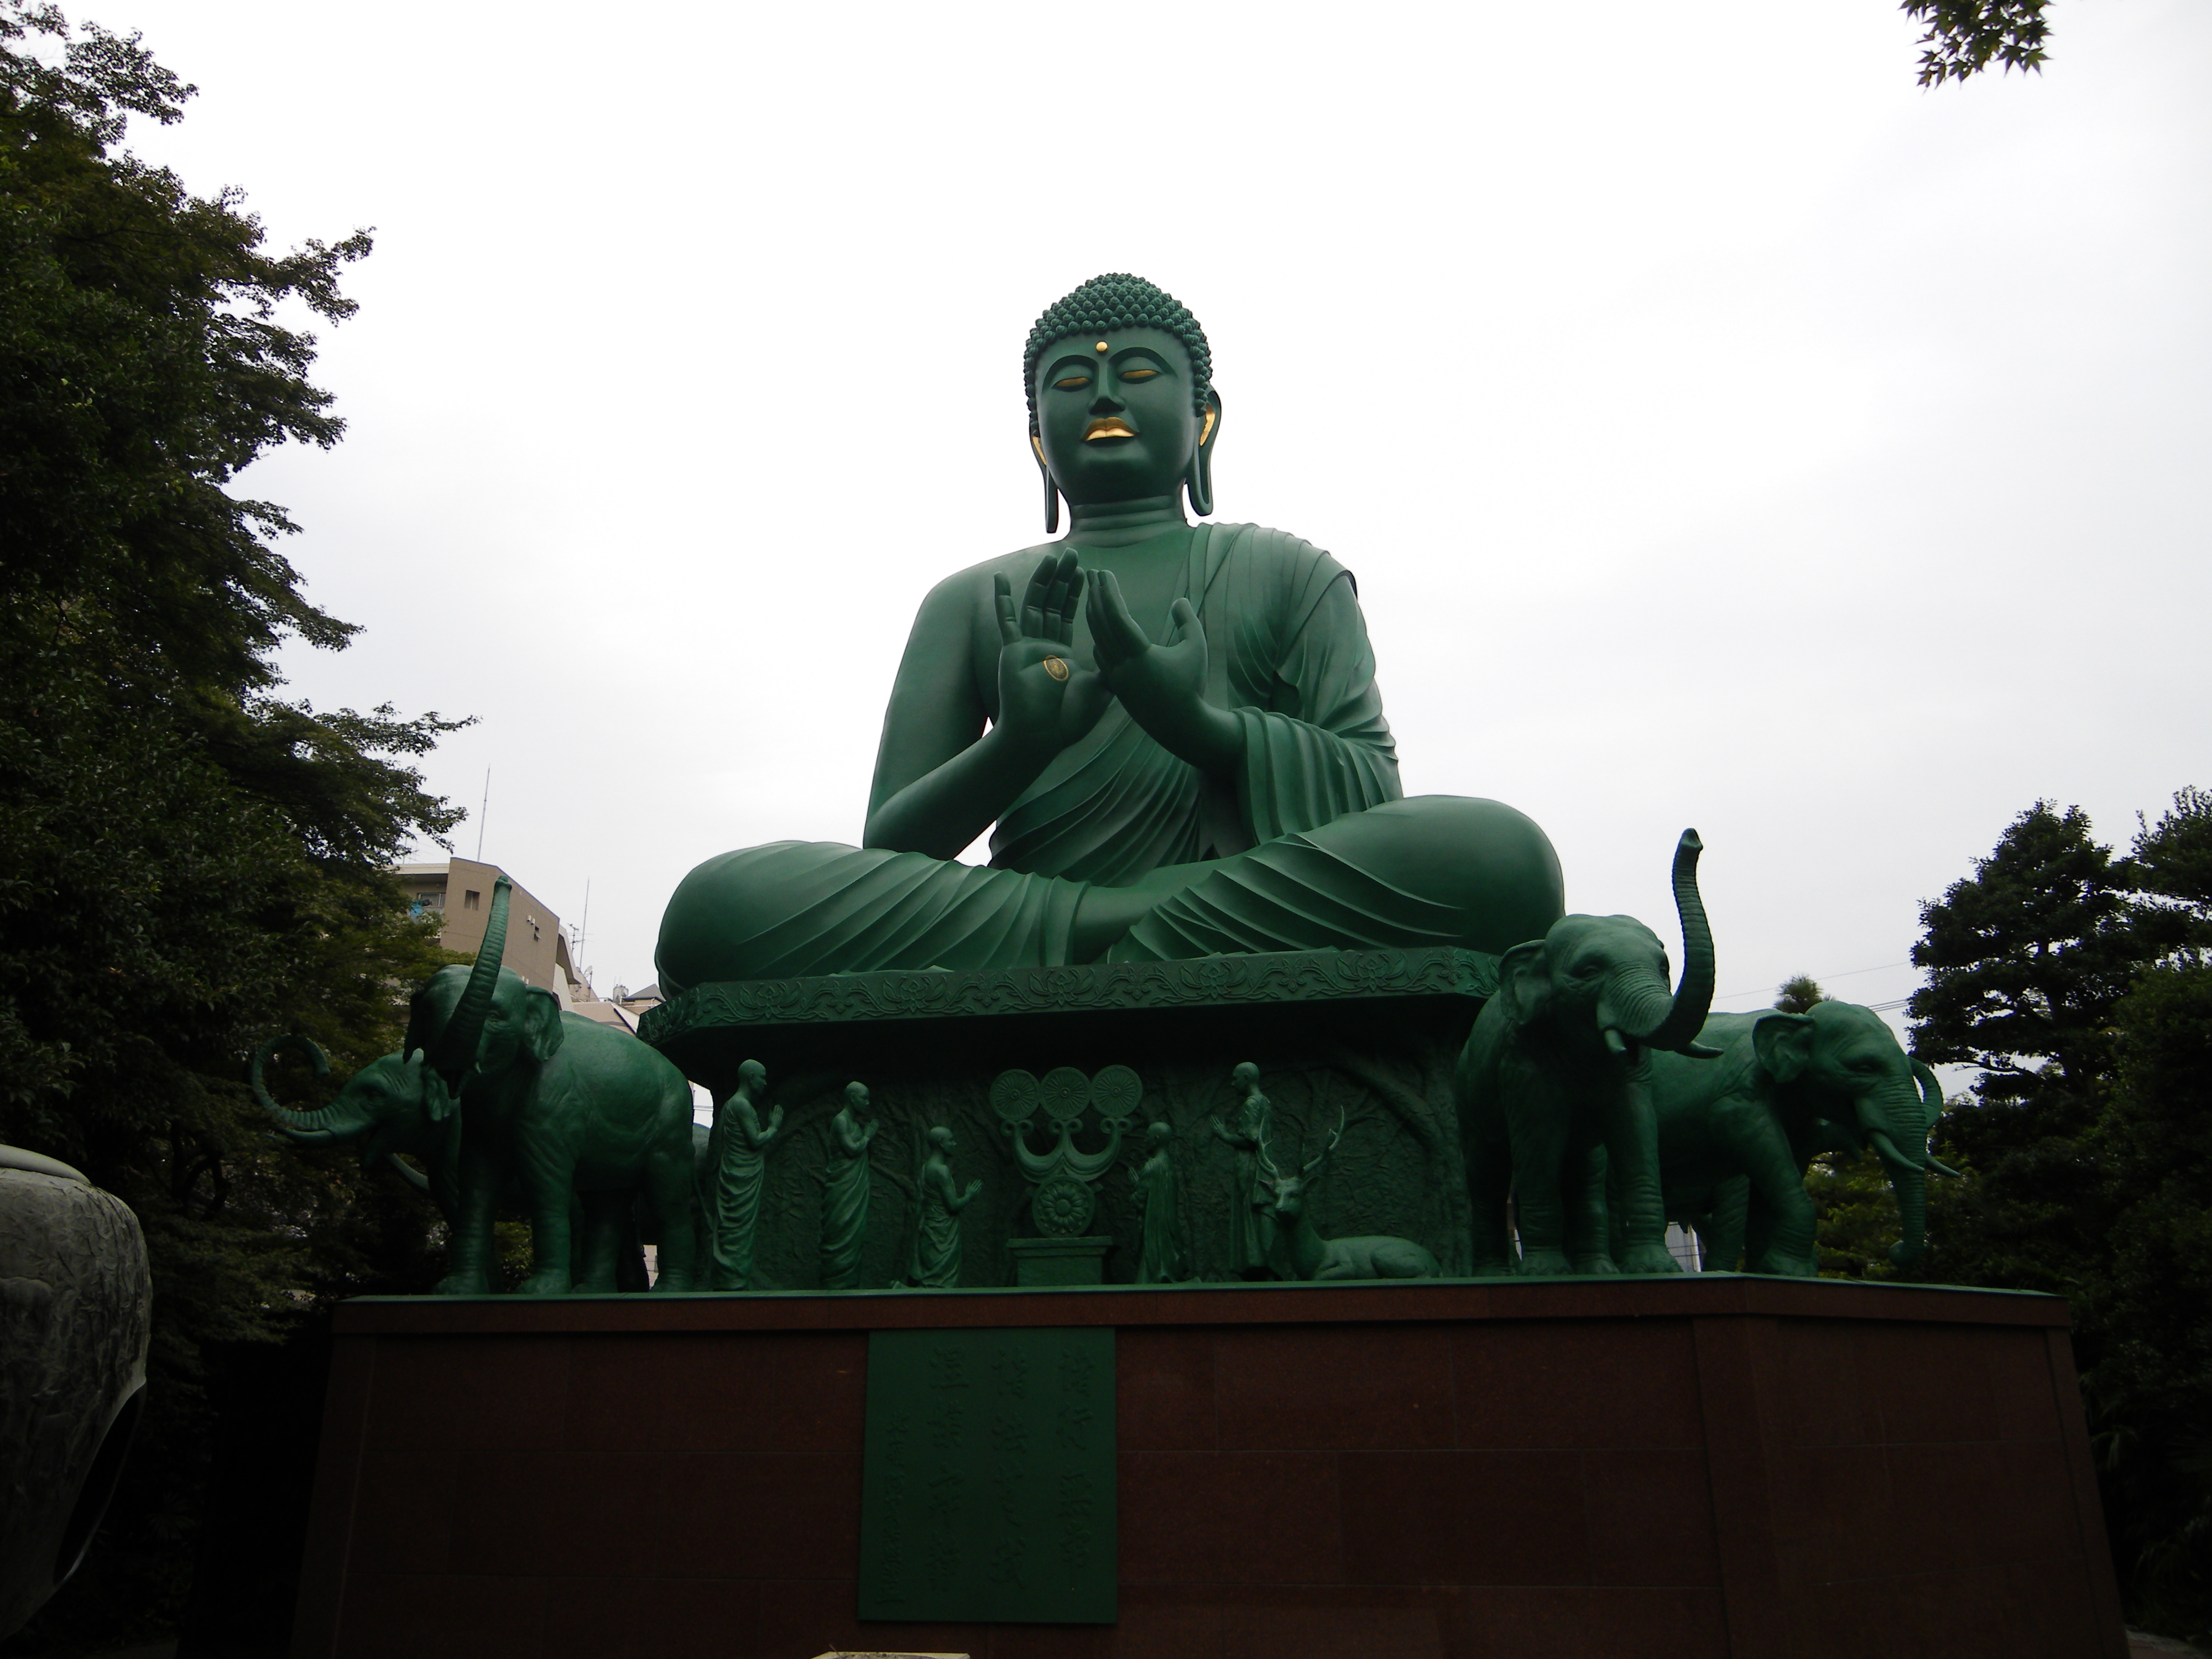 Buddha, statues - desktop wallpaper